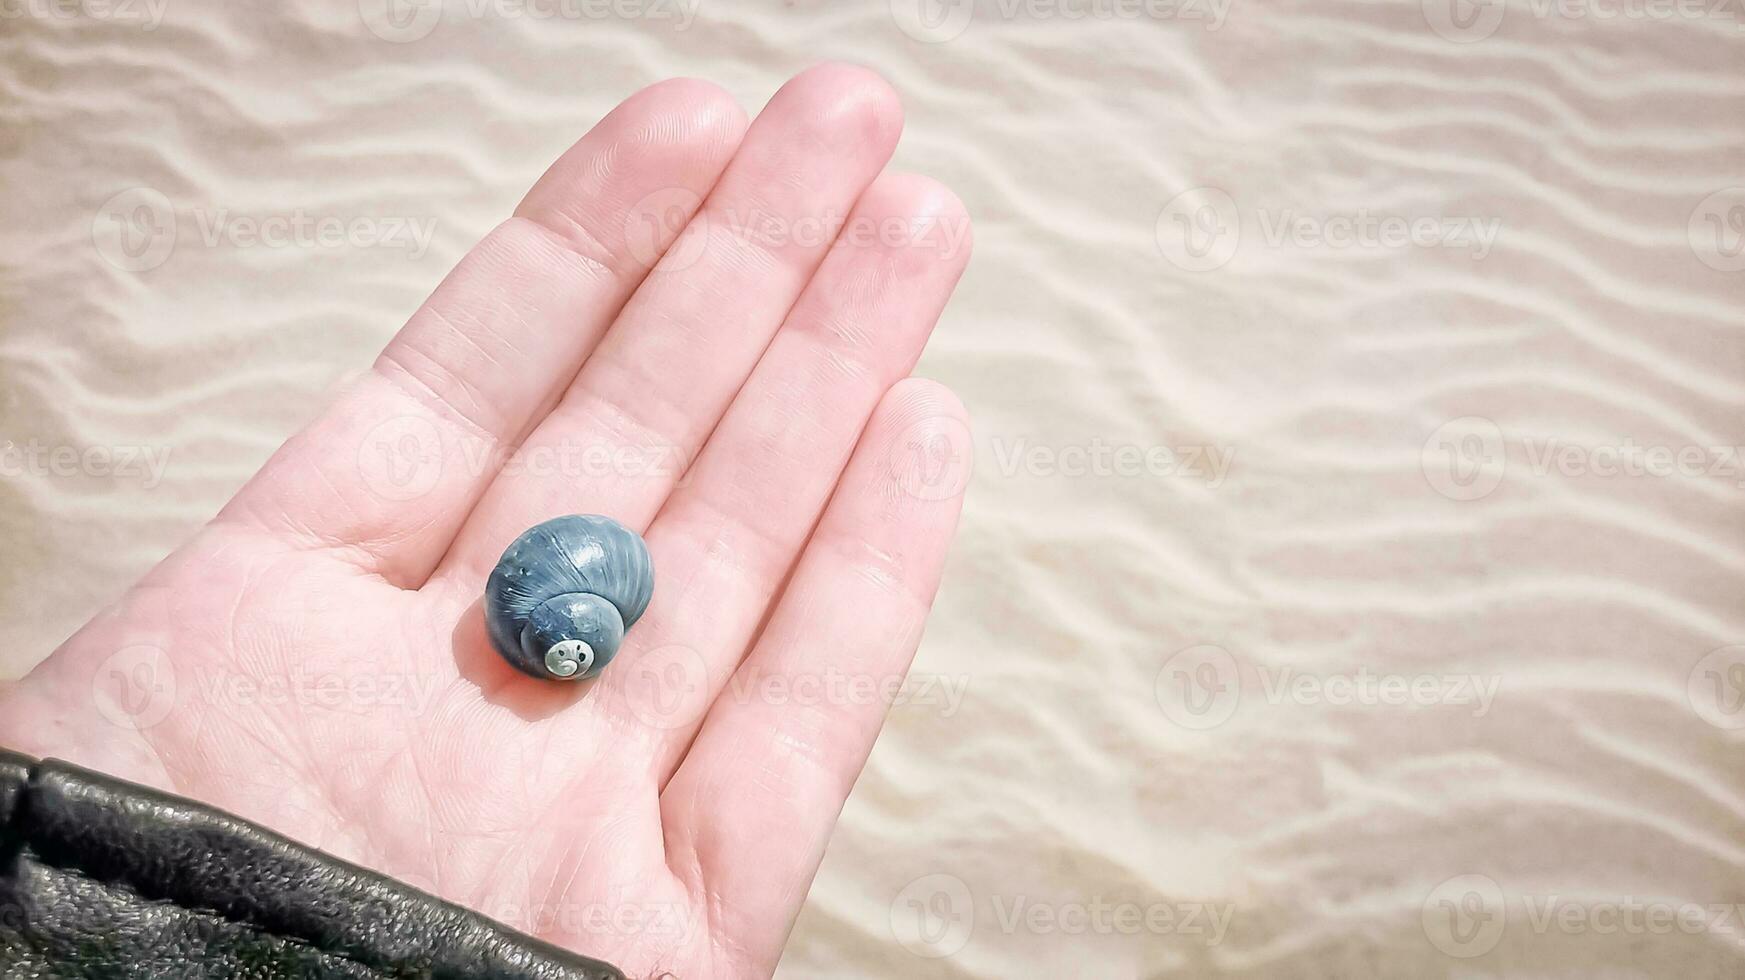 magnifique bleu coquillage sur le main paume contre une ondulé le sable plage Contexte photo